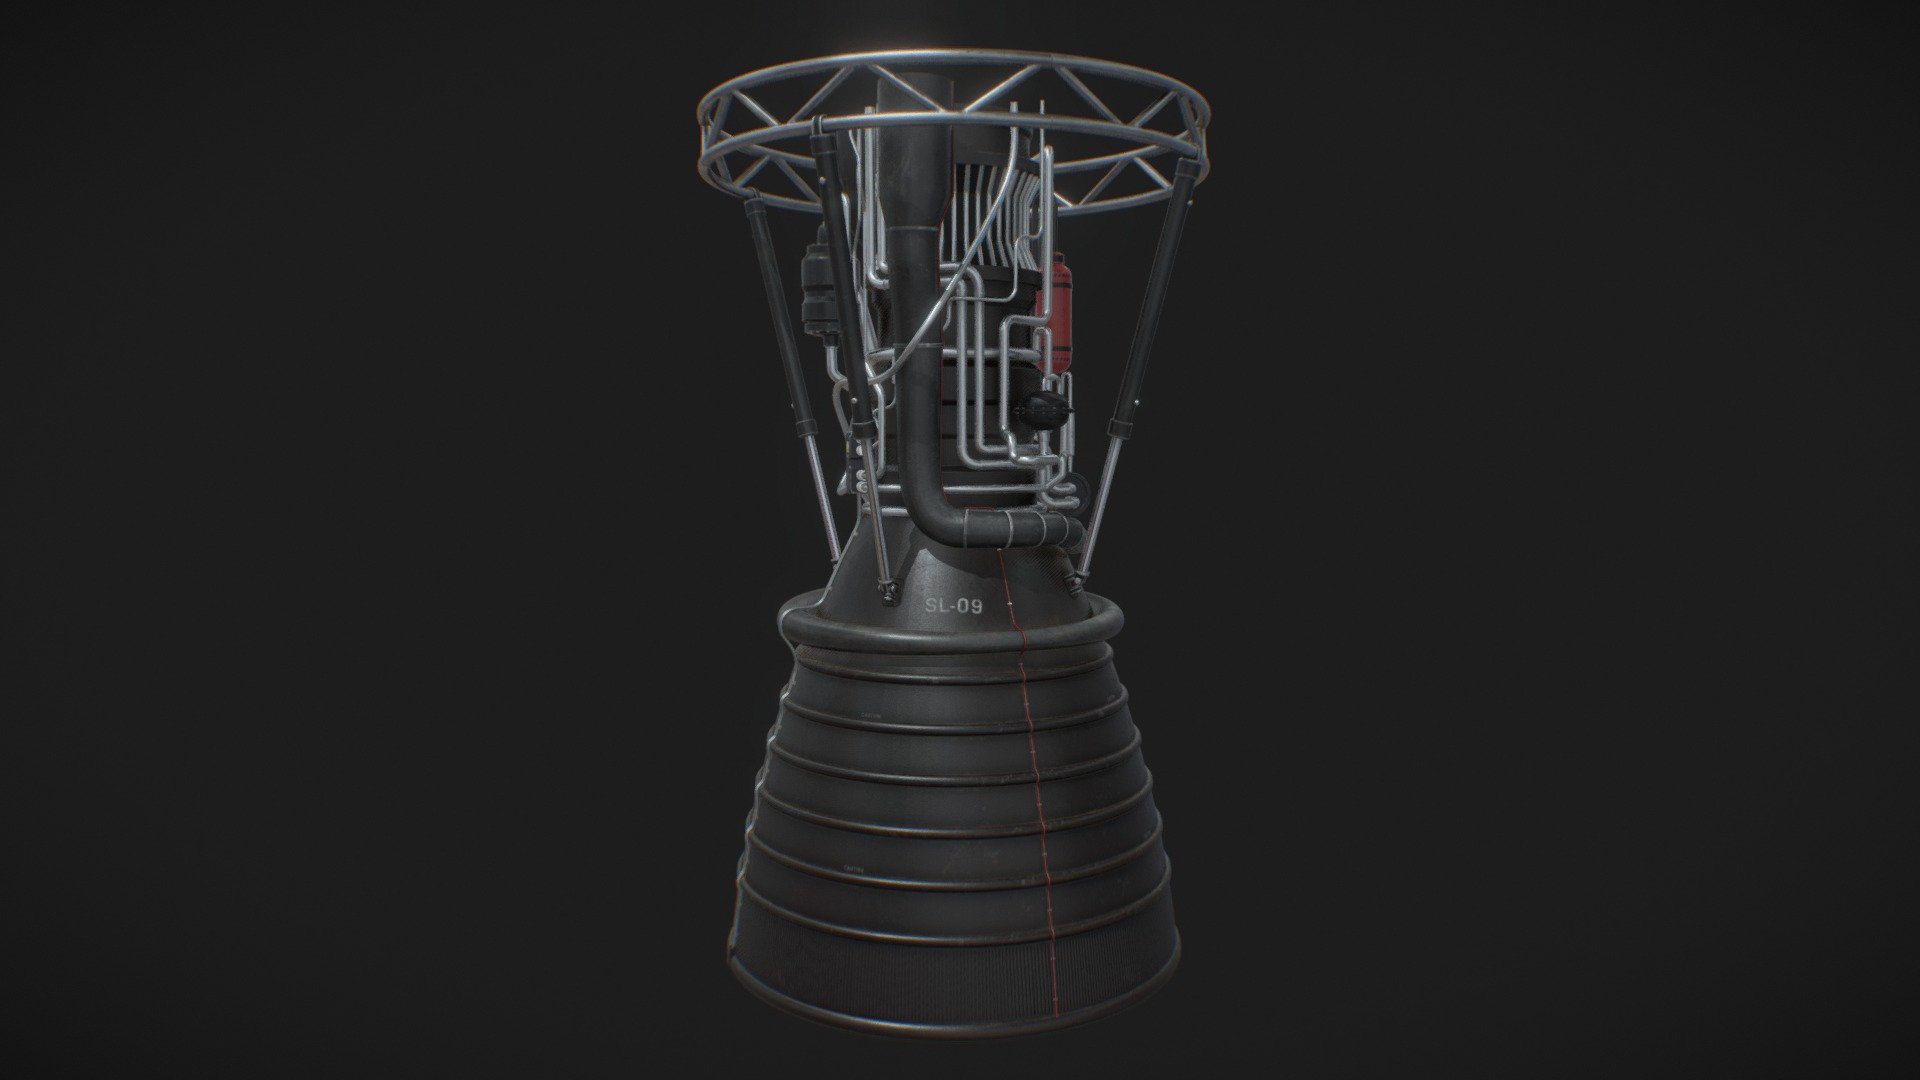 Basic rocket engine 3d model